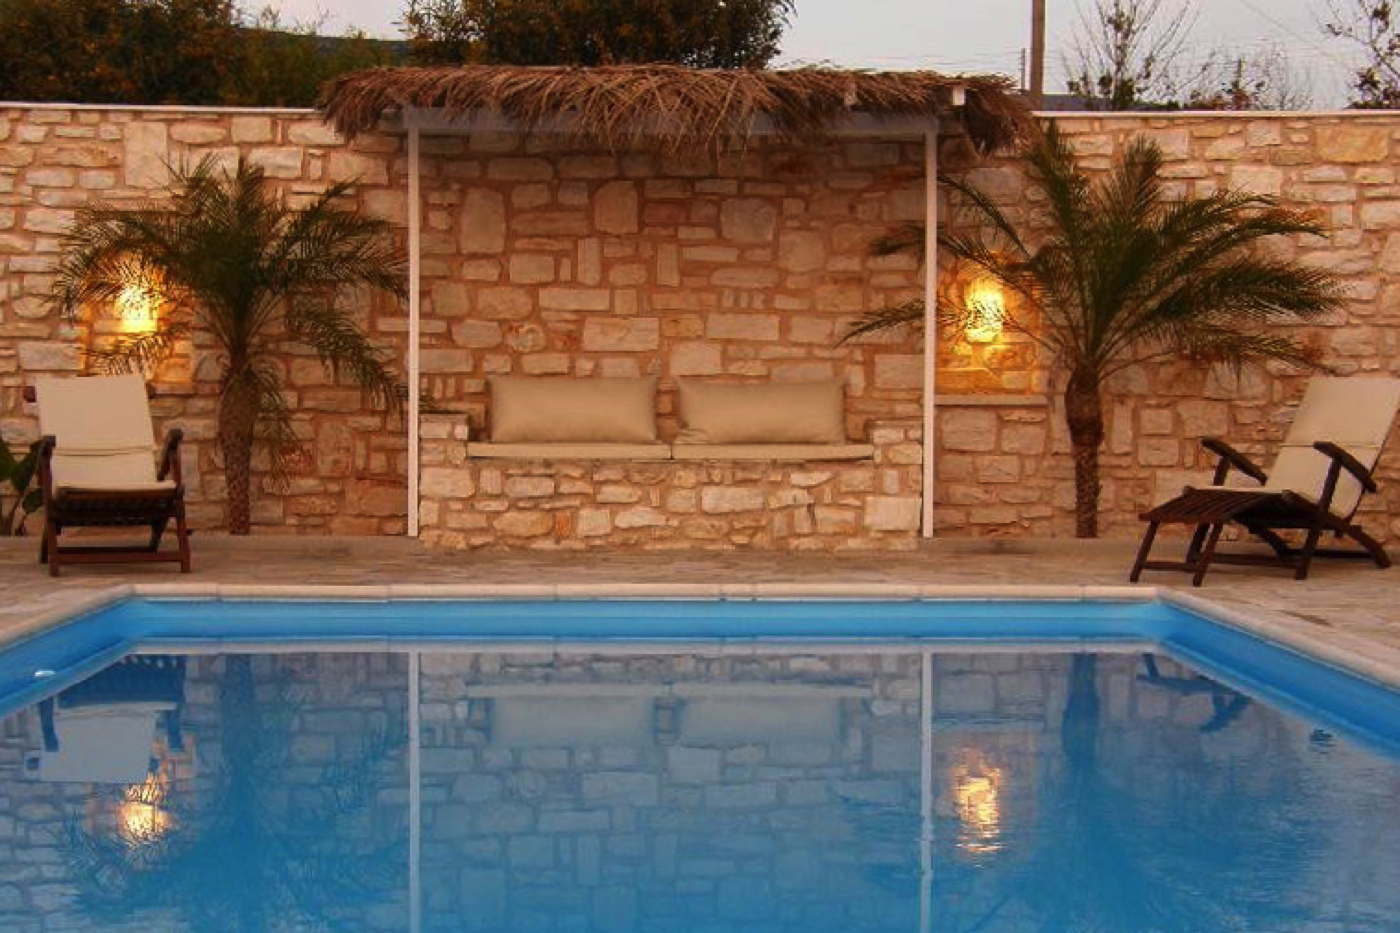 rental villa-holiday rental-vacation villa in Greece-Cyclades-Paros-Agia Irini